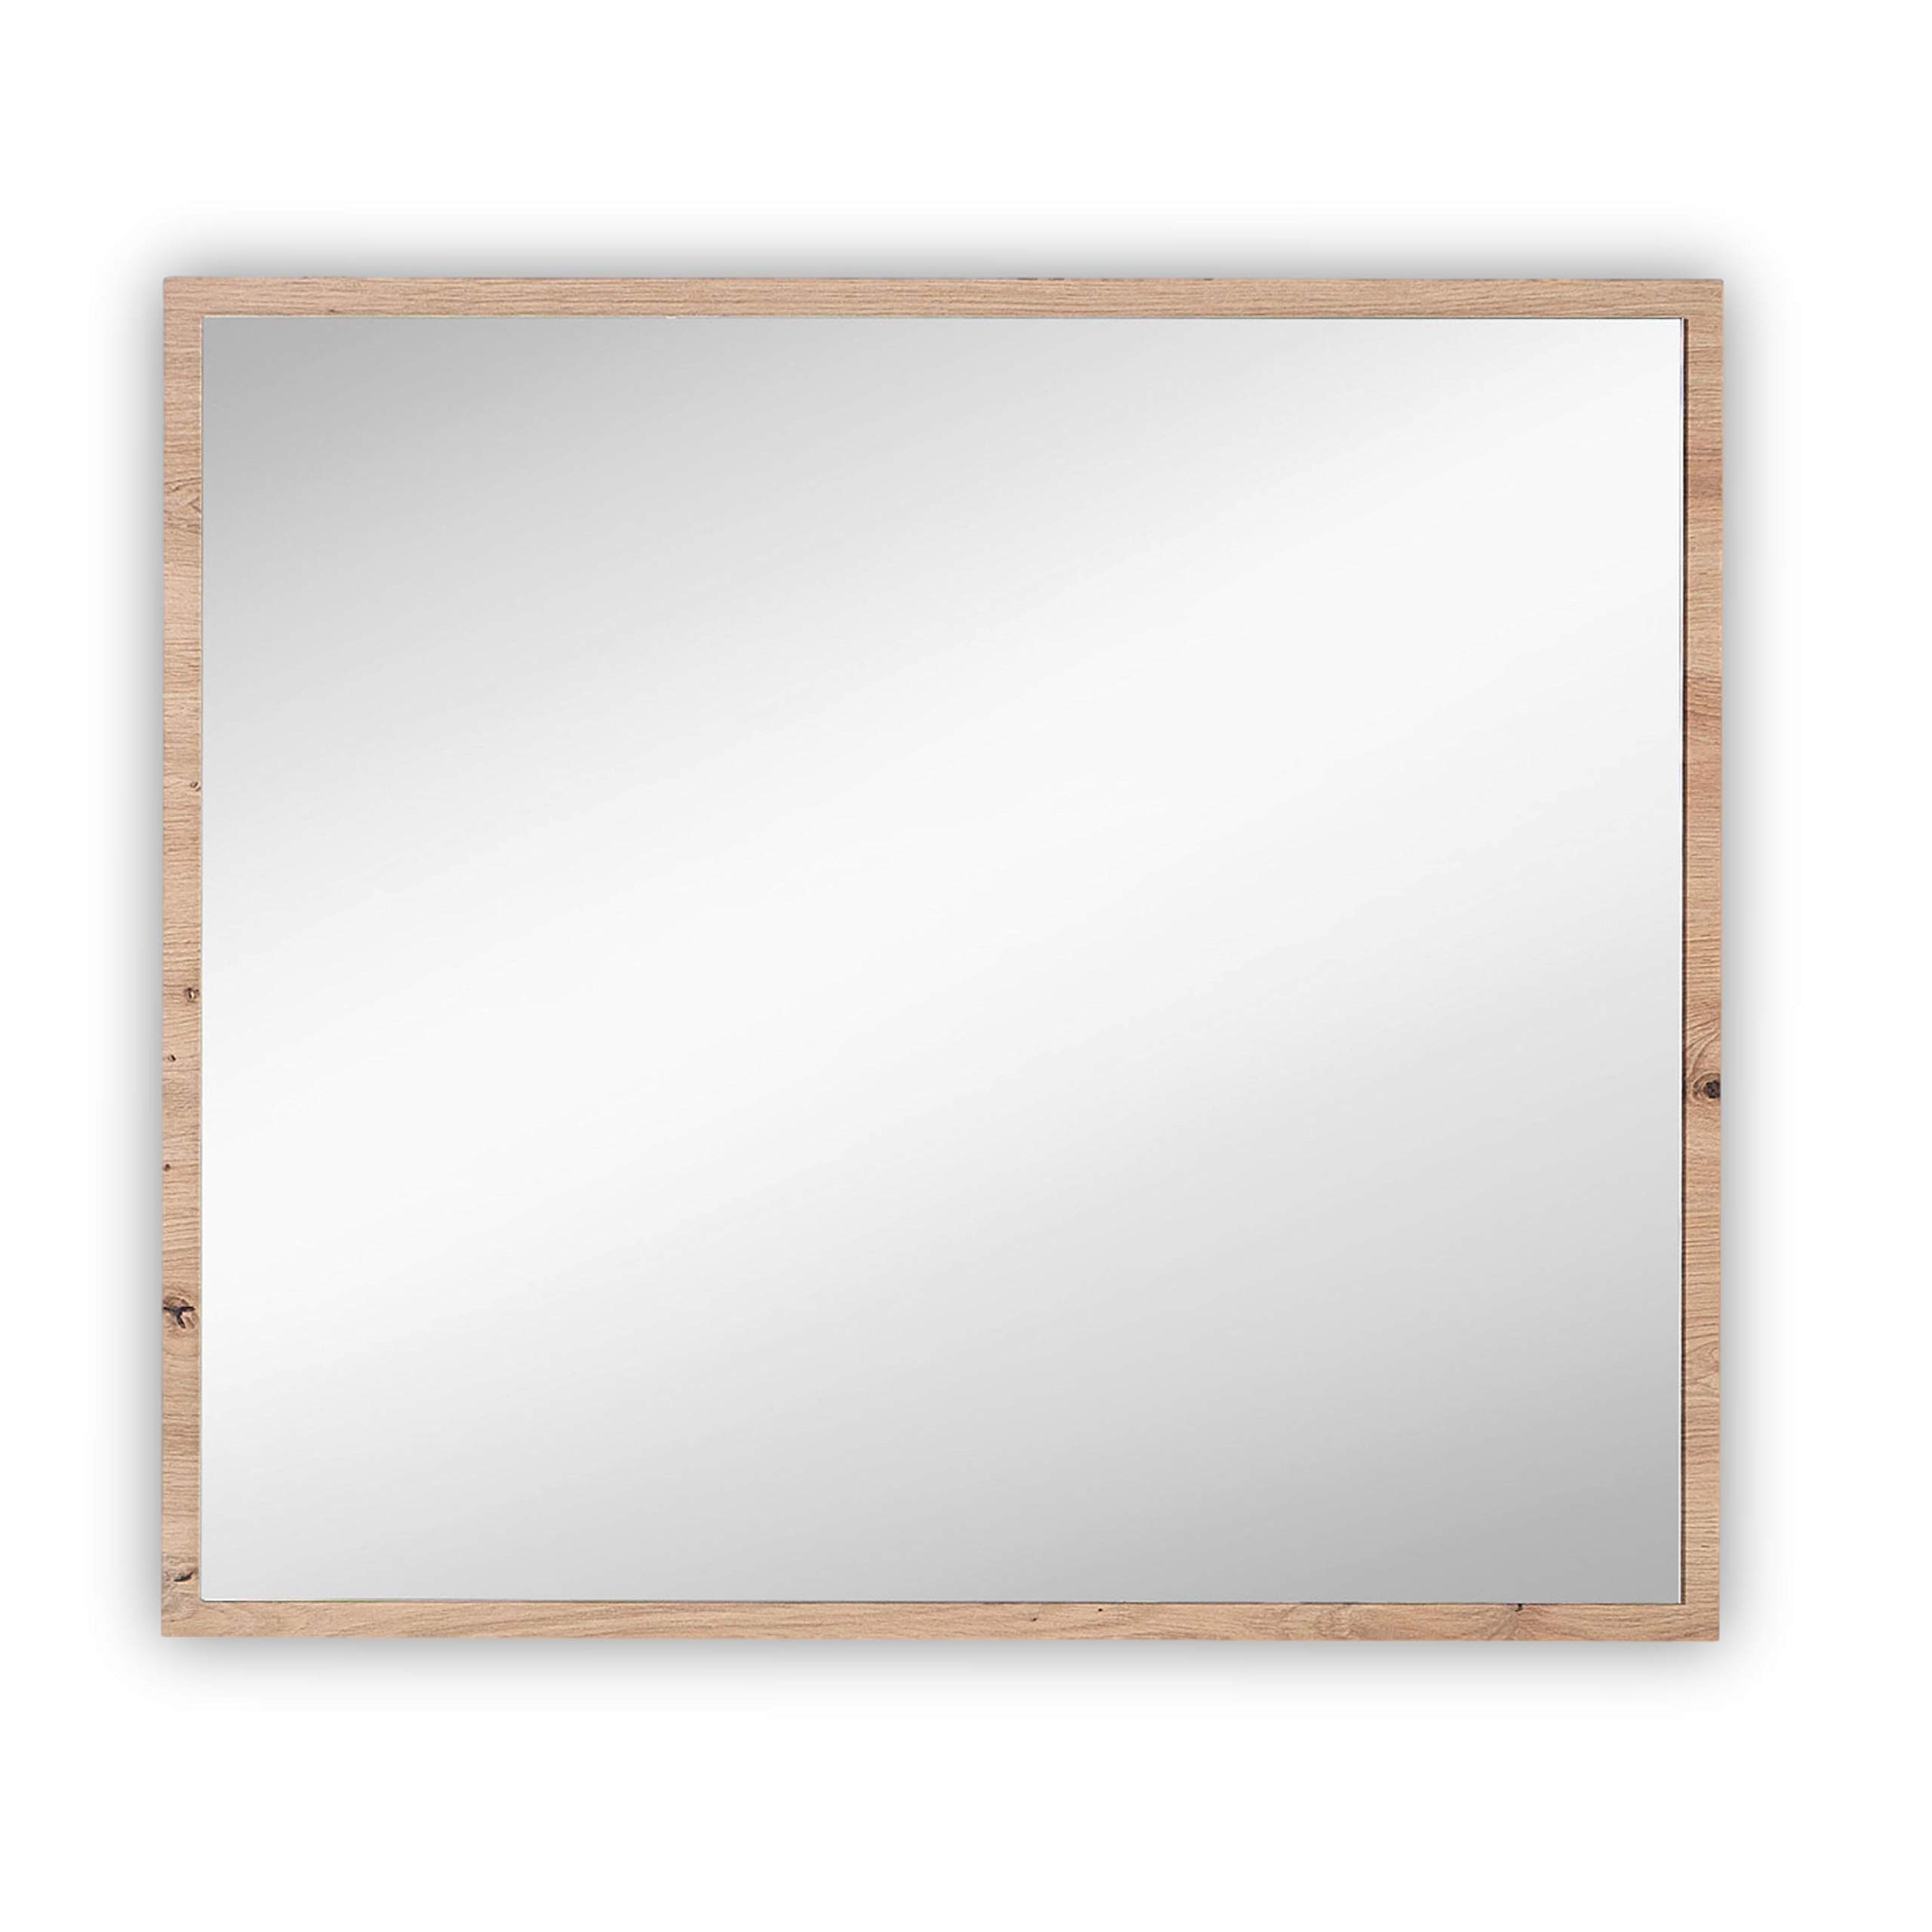 Stella Trading MEMPHIS Moderner Wandspiegel in Artisan Eiche Optik - hochwertiger Spiegel für Flur & Garderobe - 80 x 70 x 2 cm (B/H/T)